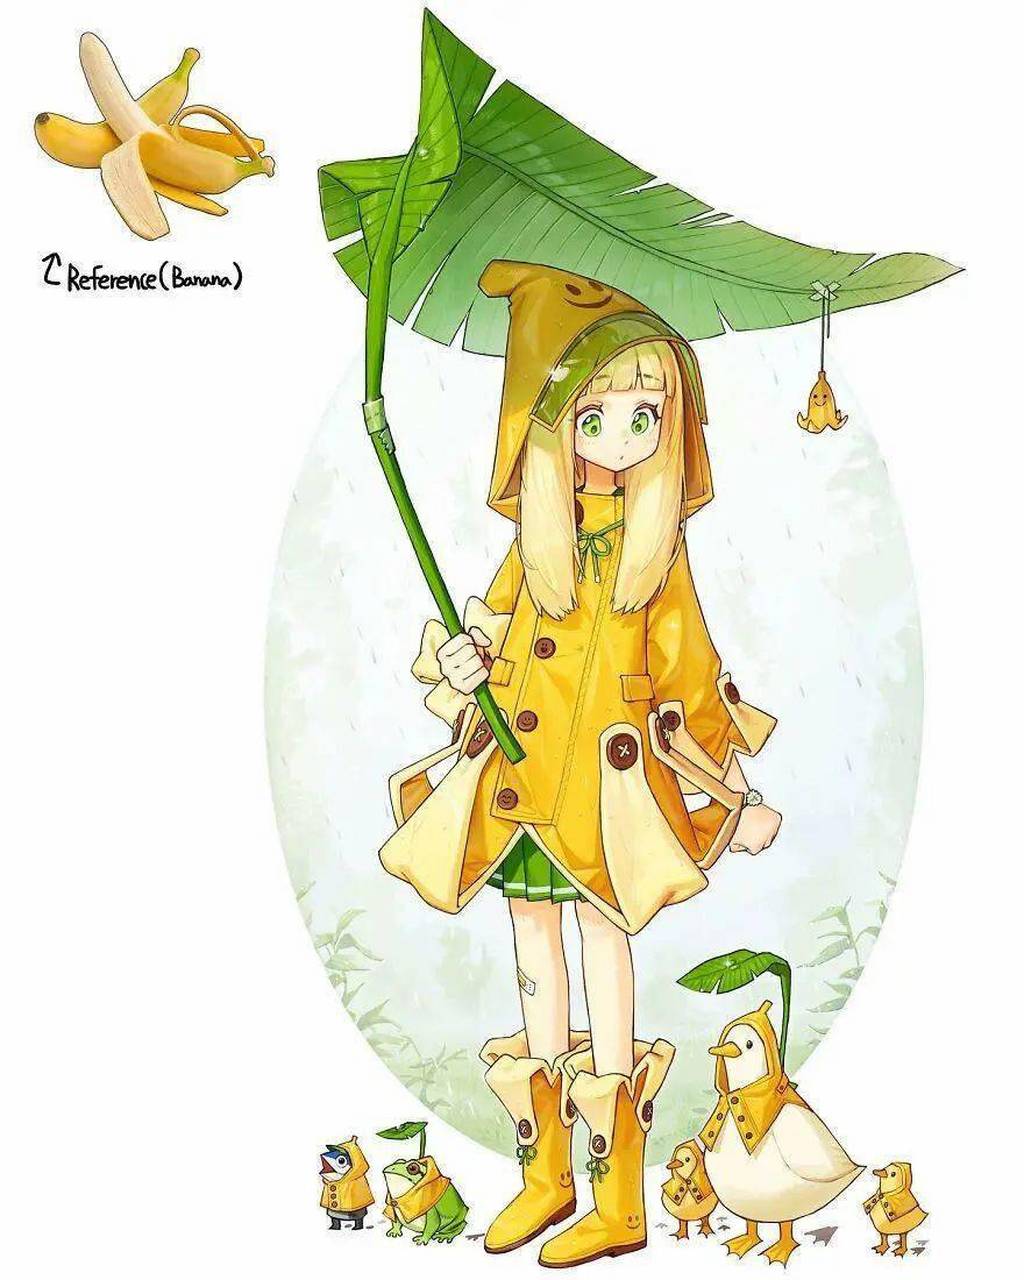 万物皆可拟人化之可爱的香蕉少女,香蕉这么可爱,怎么可以吃香蕉?